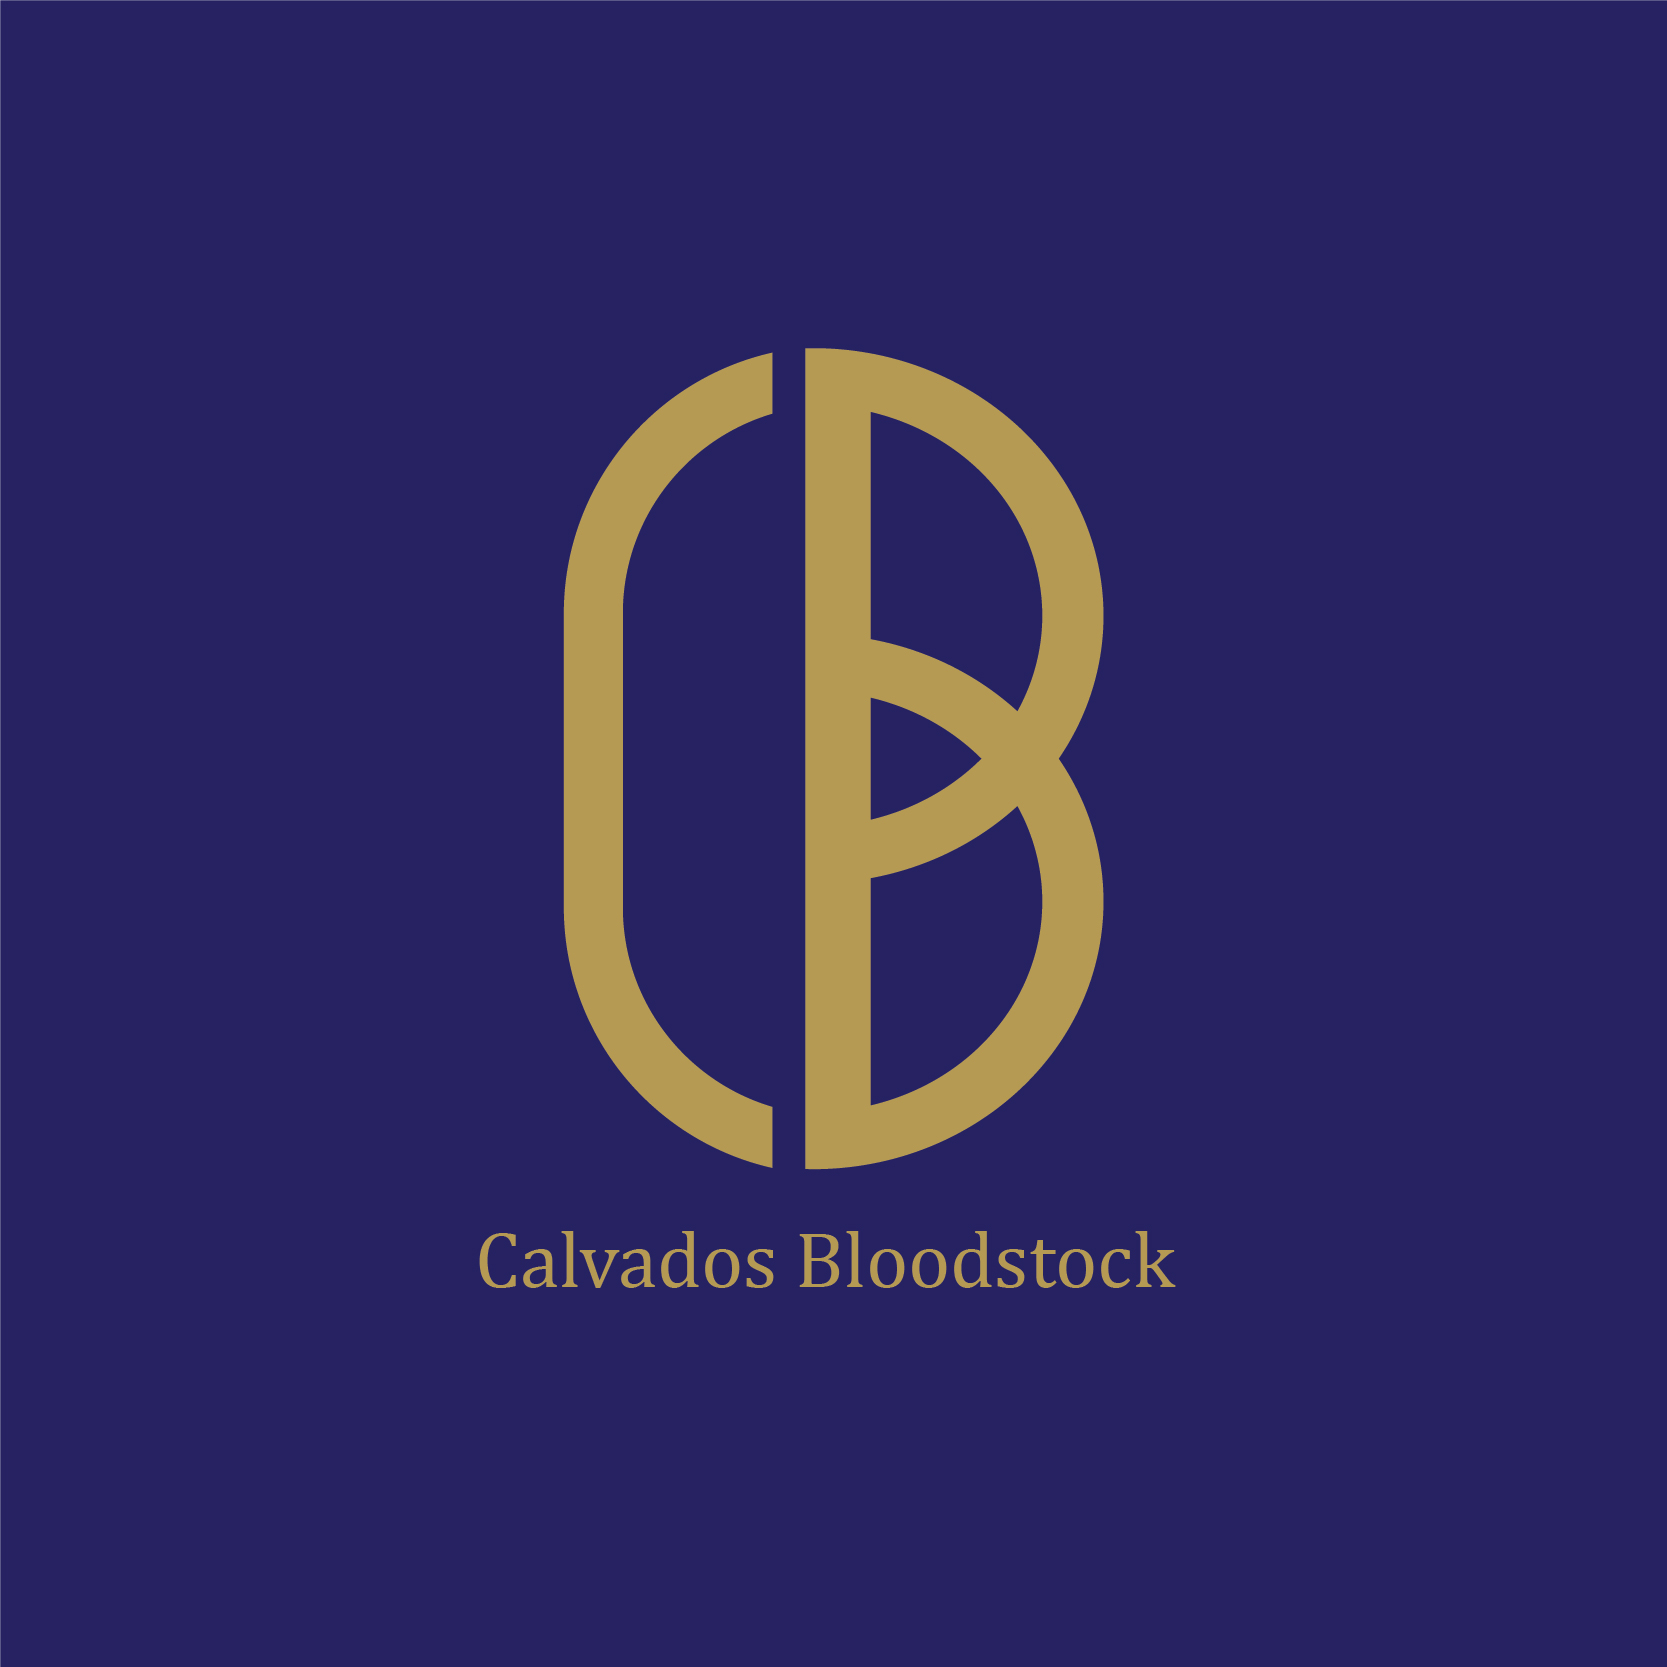 Calvados Bloodstock